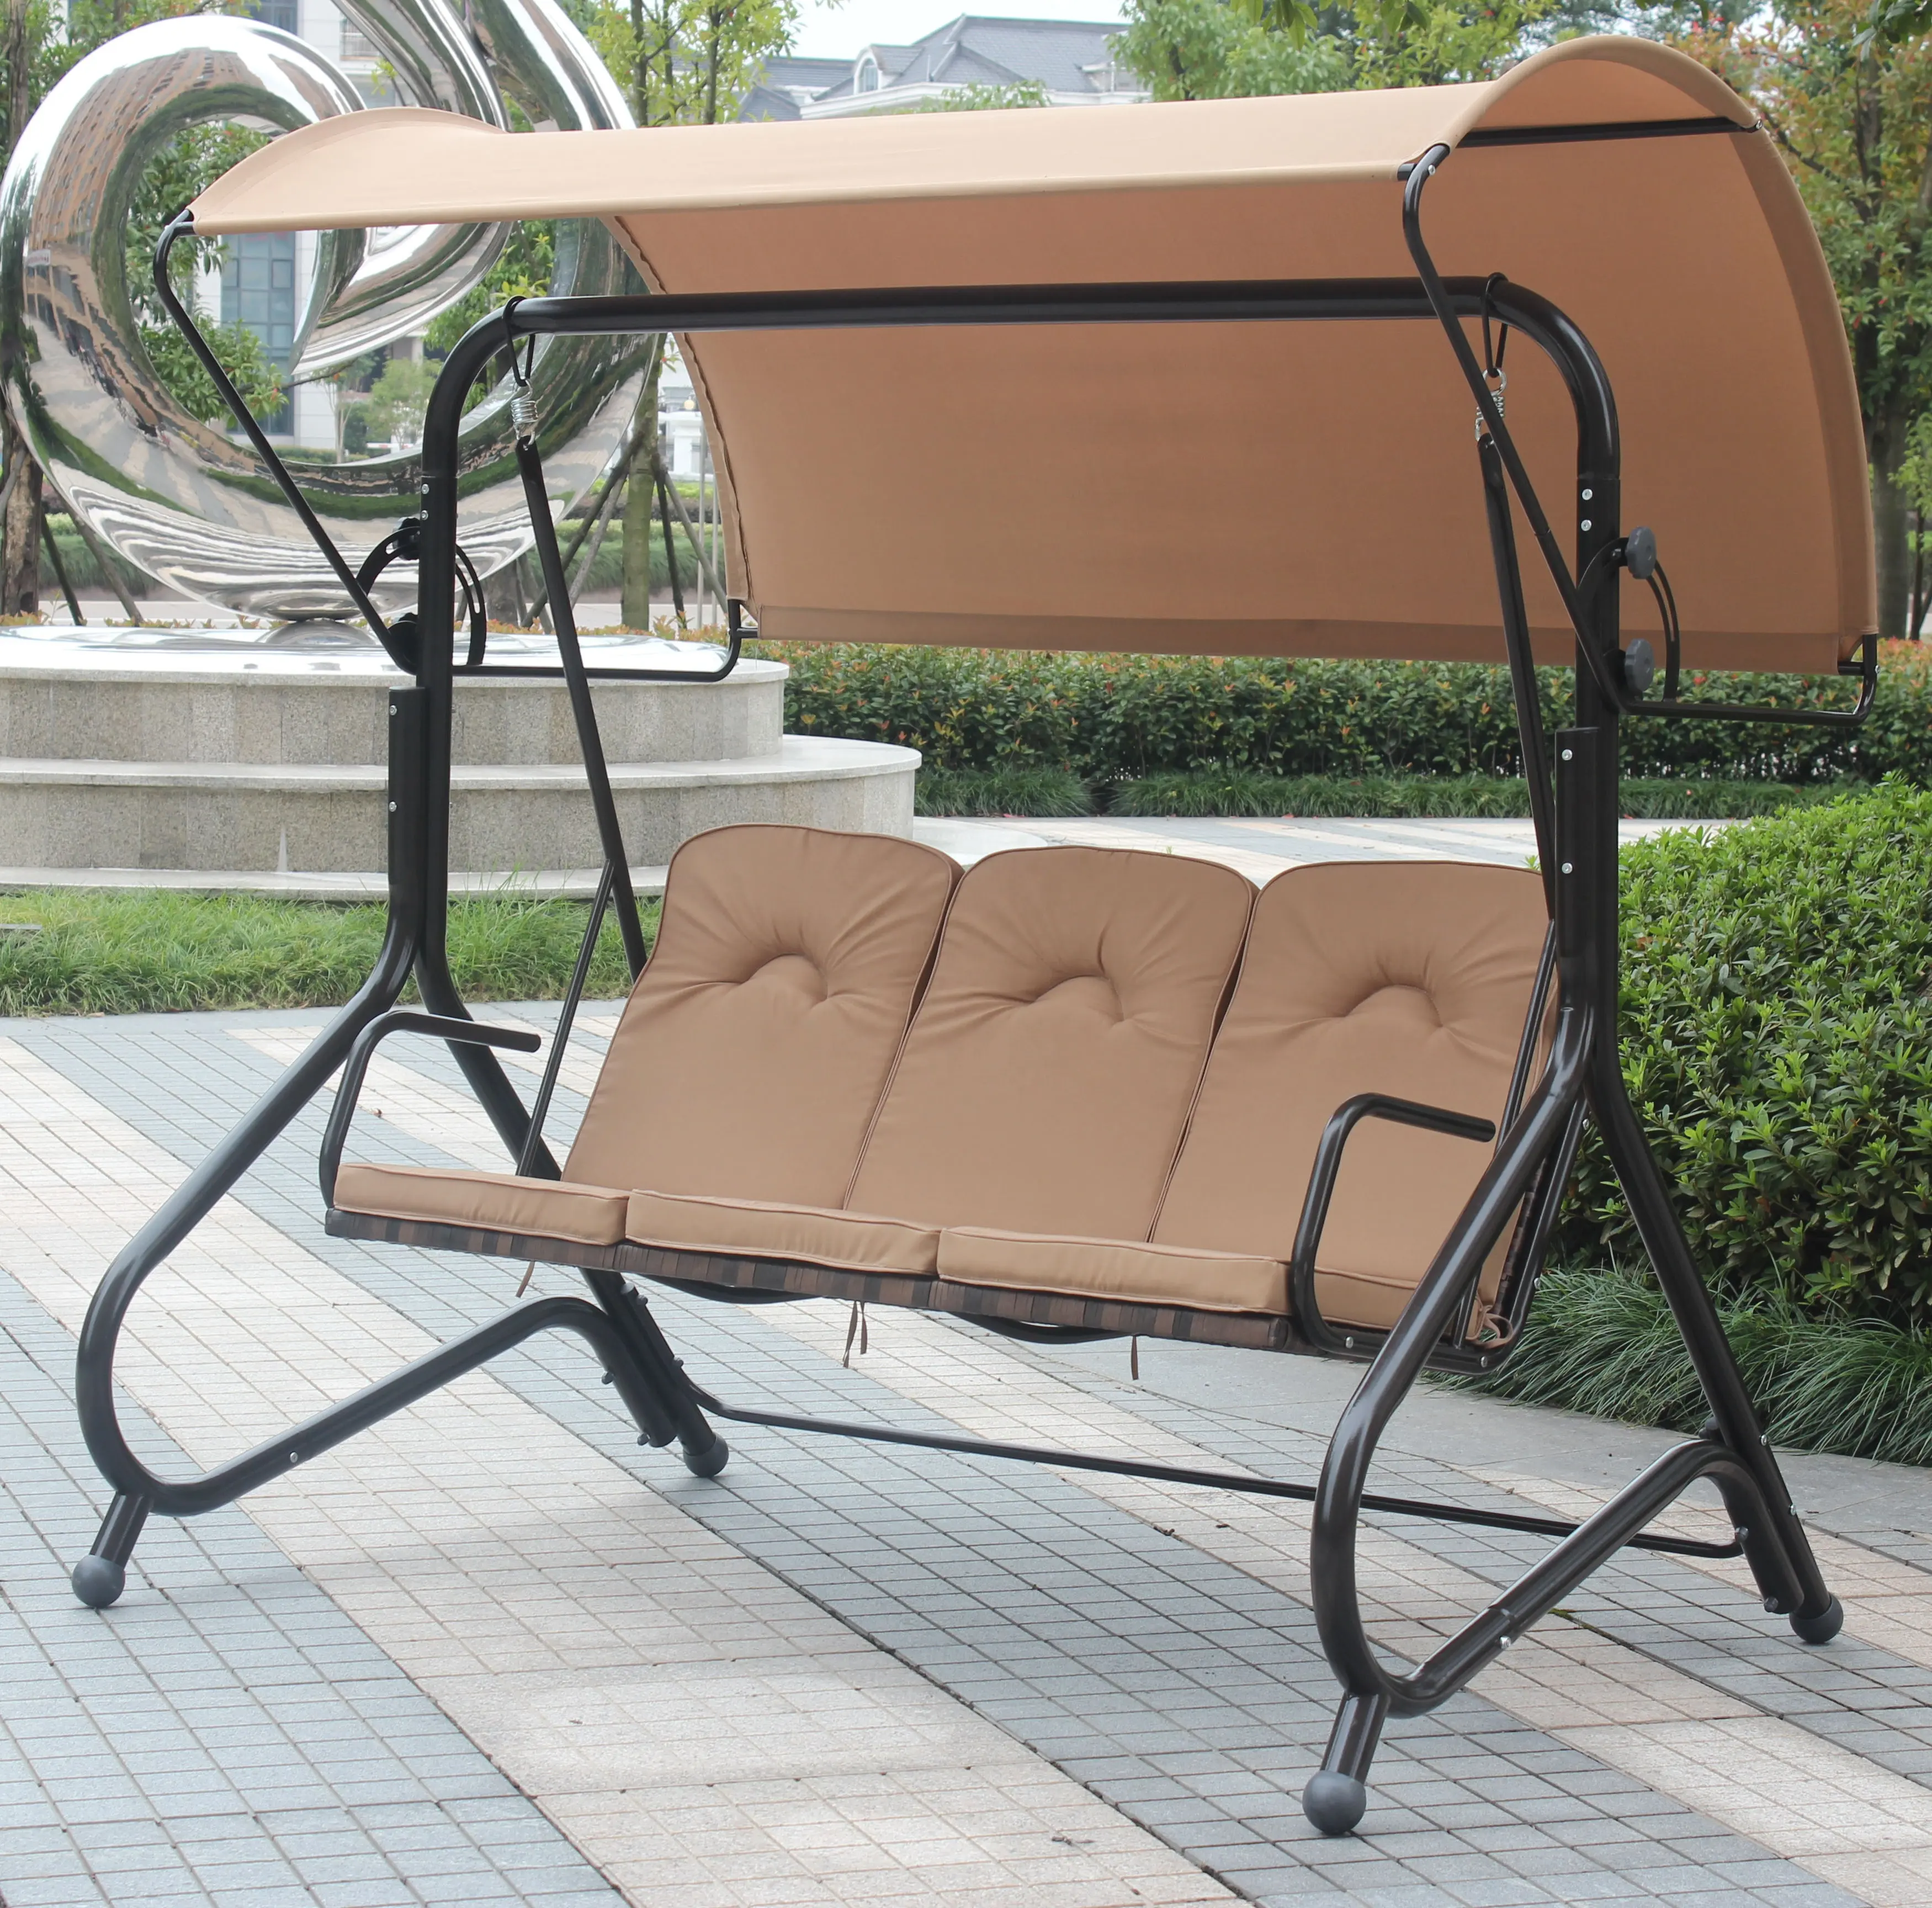 Columpio de alta calidad para silla de jardín, Columpio de hierro con toldo para playa, con 3 asientos